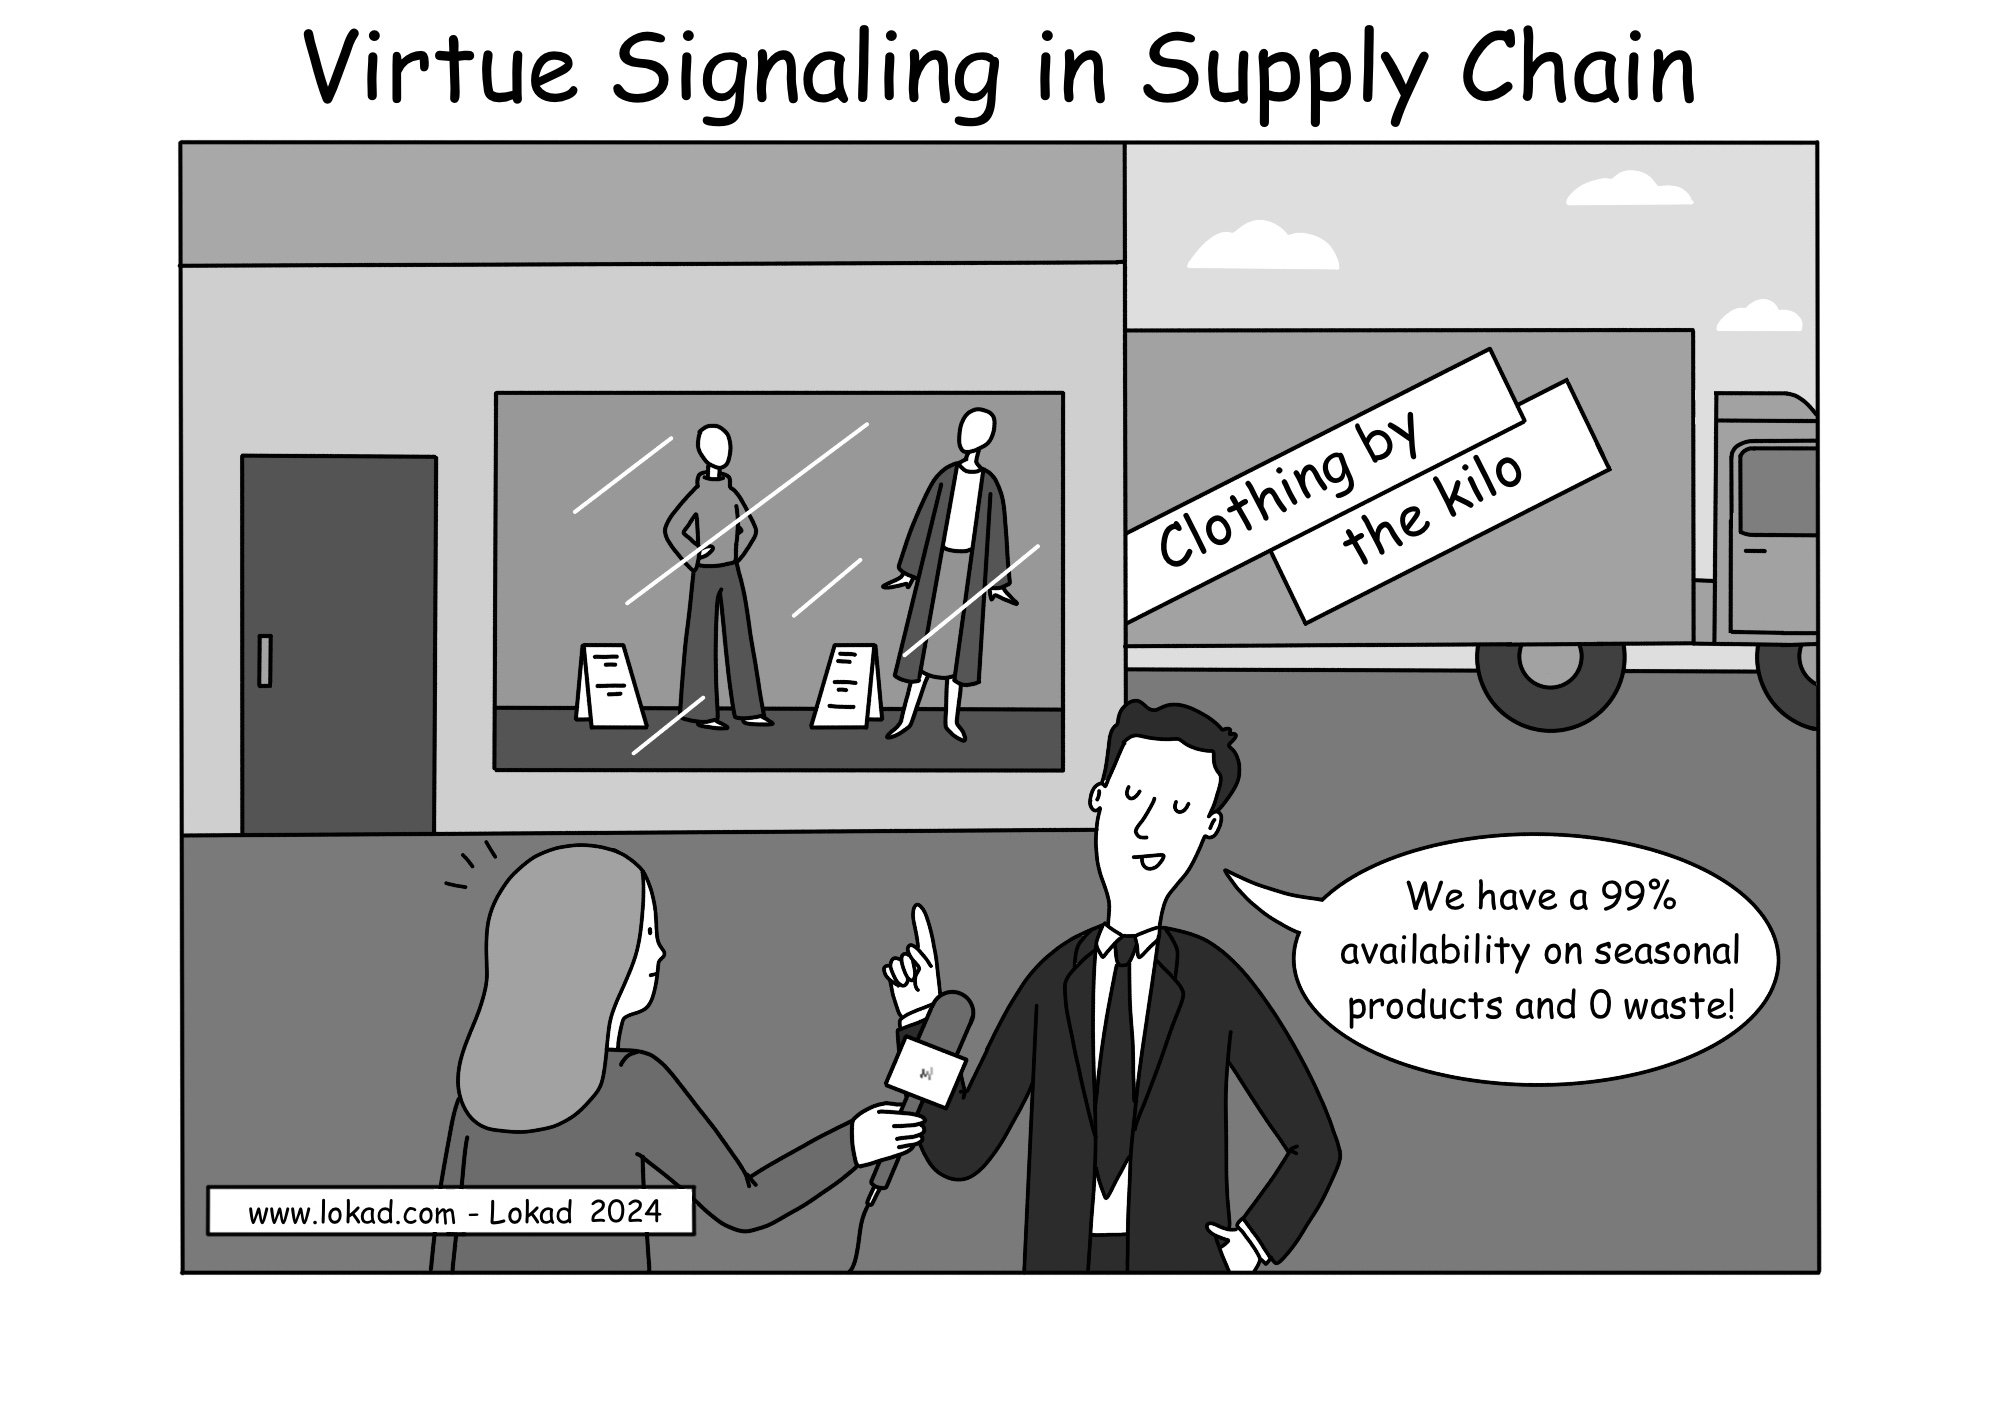 Le Signalement de Vertu dans la Supply Chain